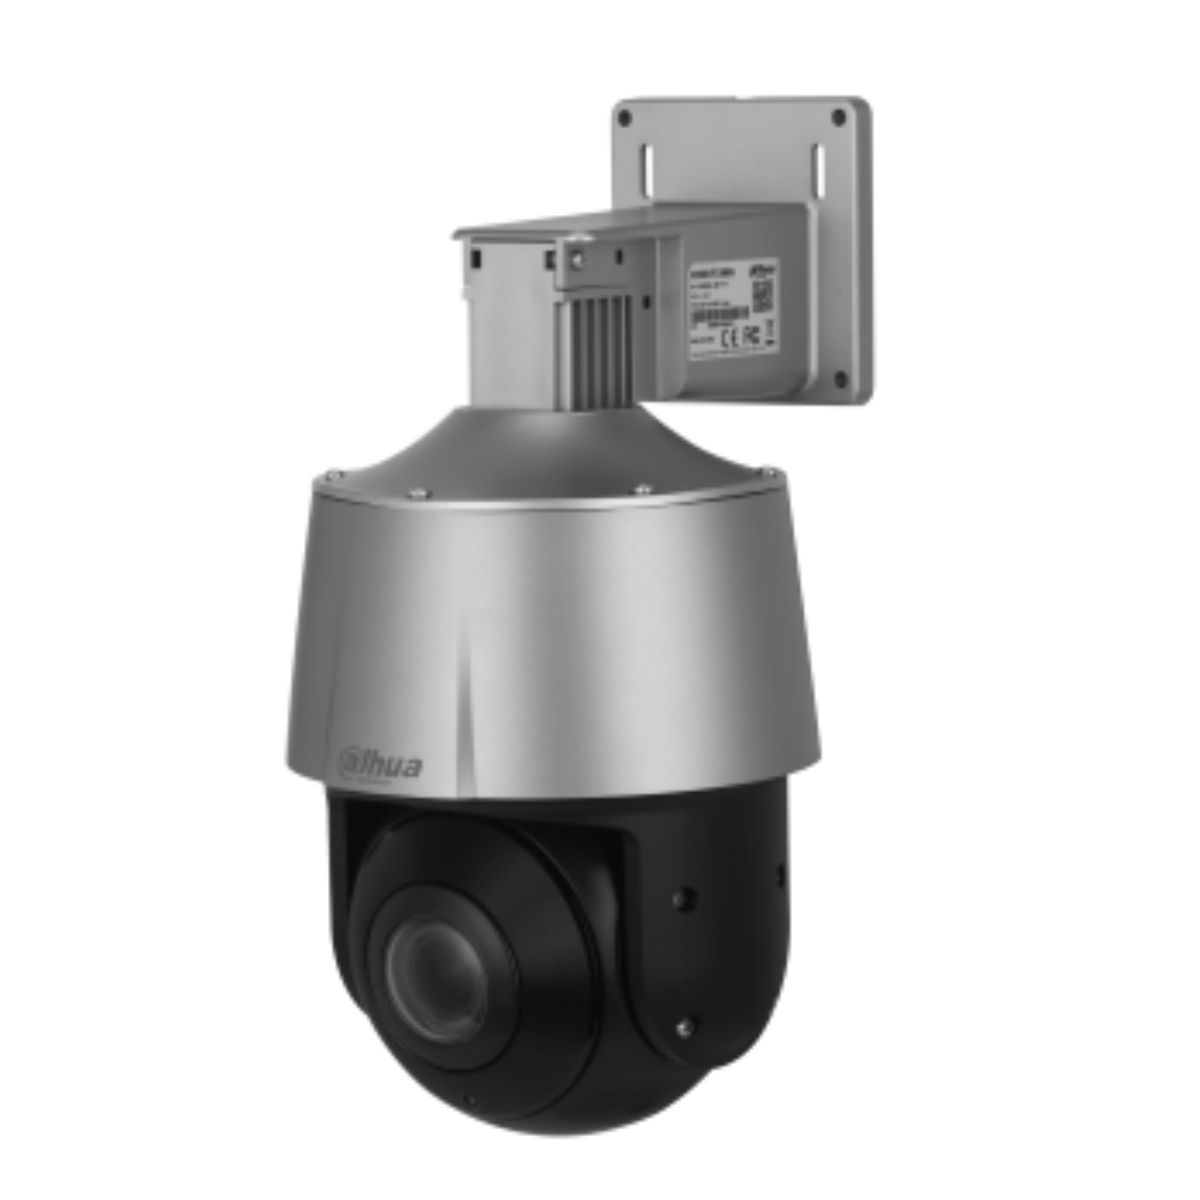 Camera IP Speed Dome 2MP Dahua DH-SD3A205-GNP-PV hồng ngoại 30m, Zoom quang 5X, tích hợp đèn và còi